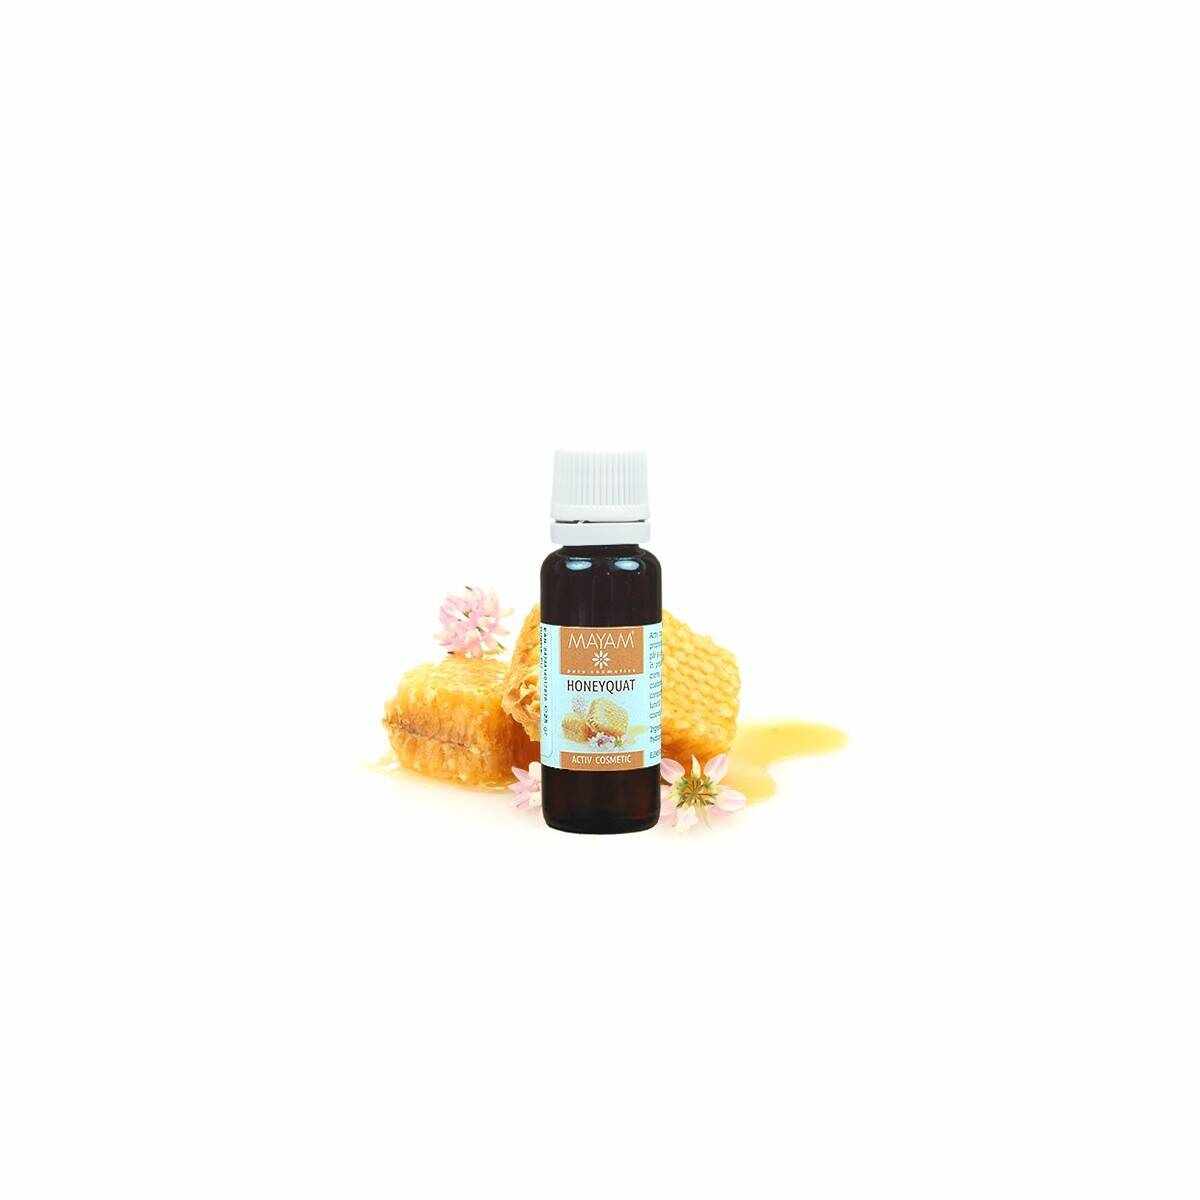 Honeyquat, 28g - Mayam